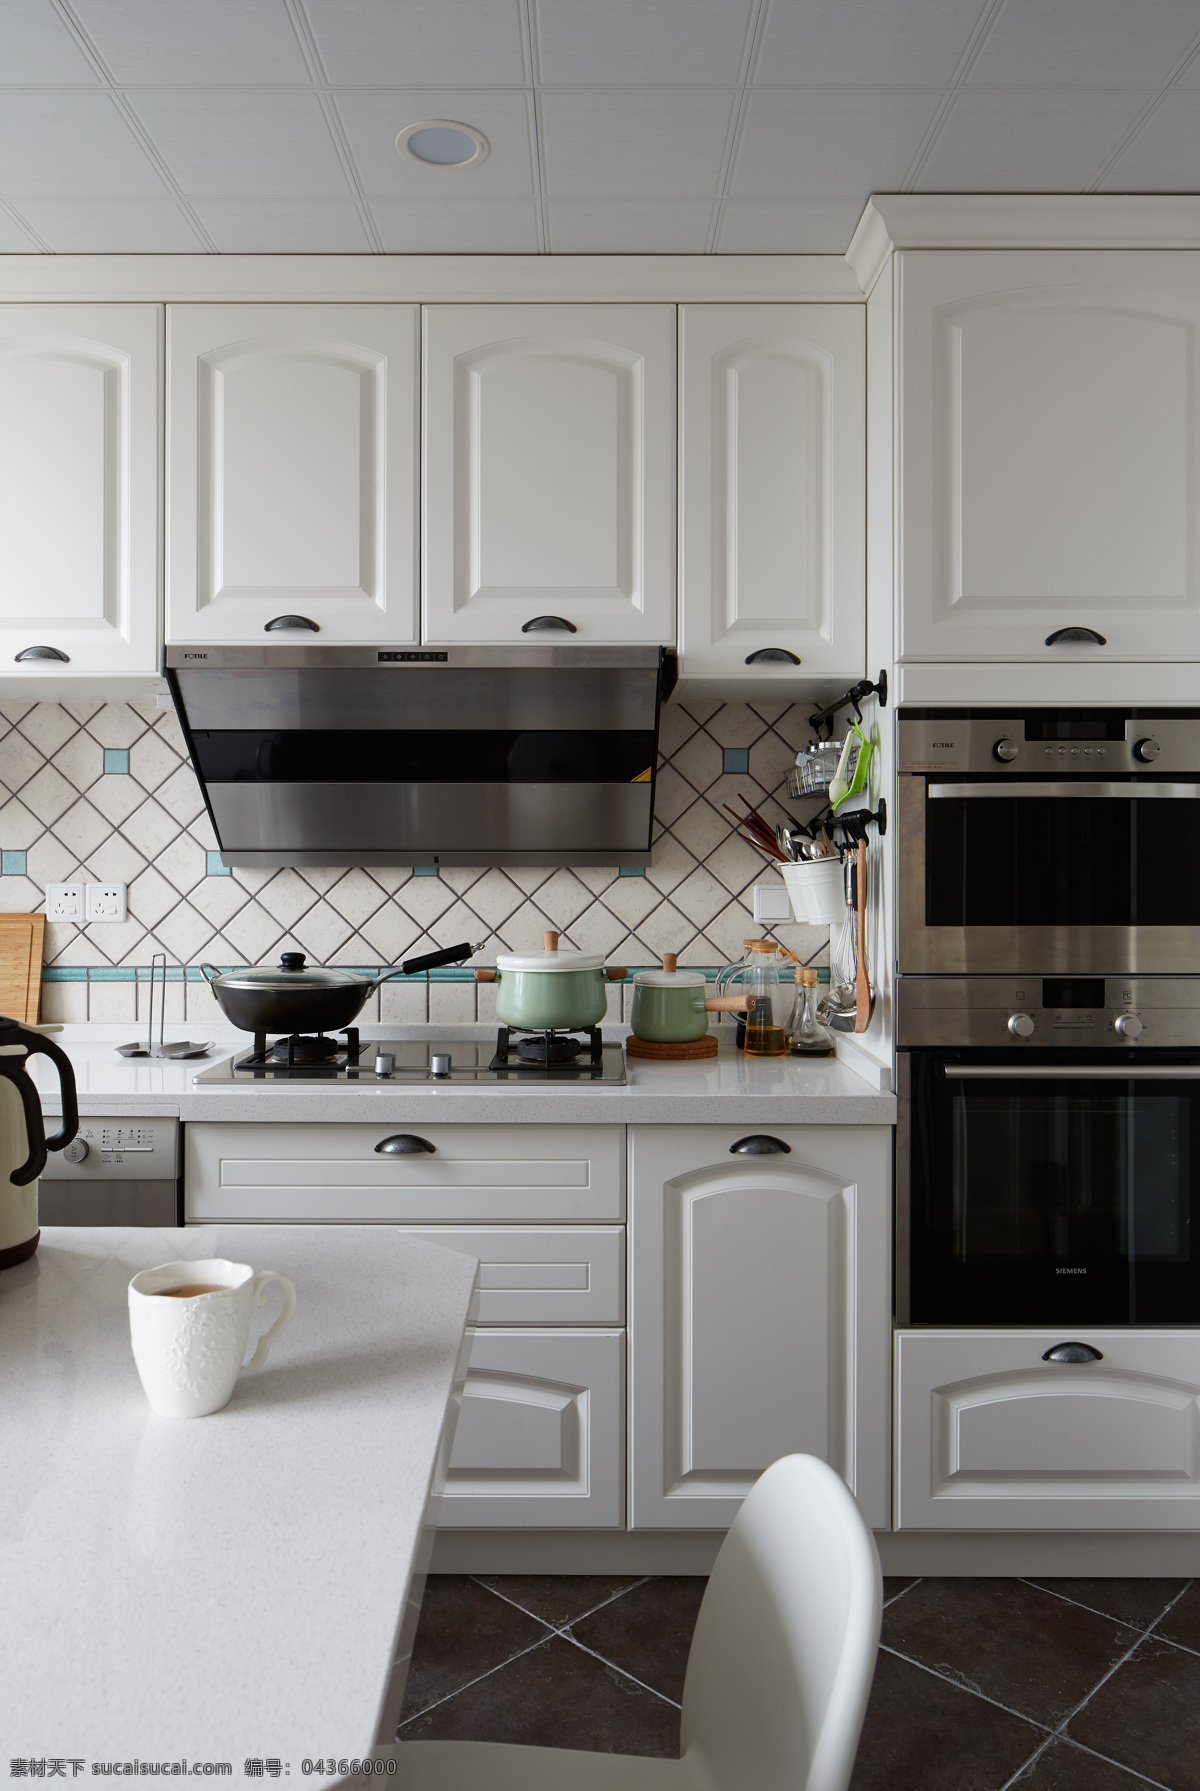 现代 清新 厨房 白色 橱柜 室内装修 效果图 白色橱柜 格子地板 白色餐桌 餐区装修